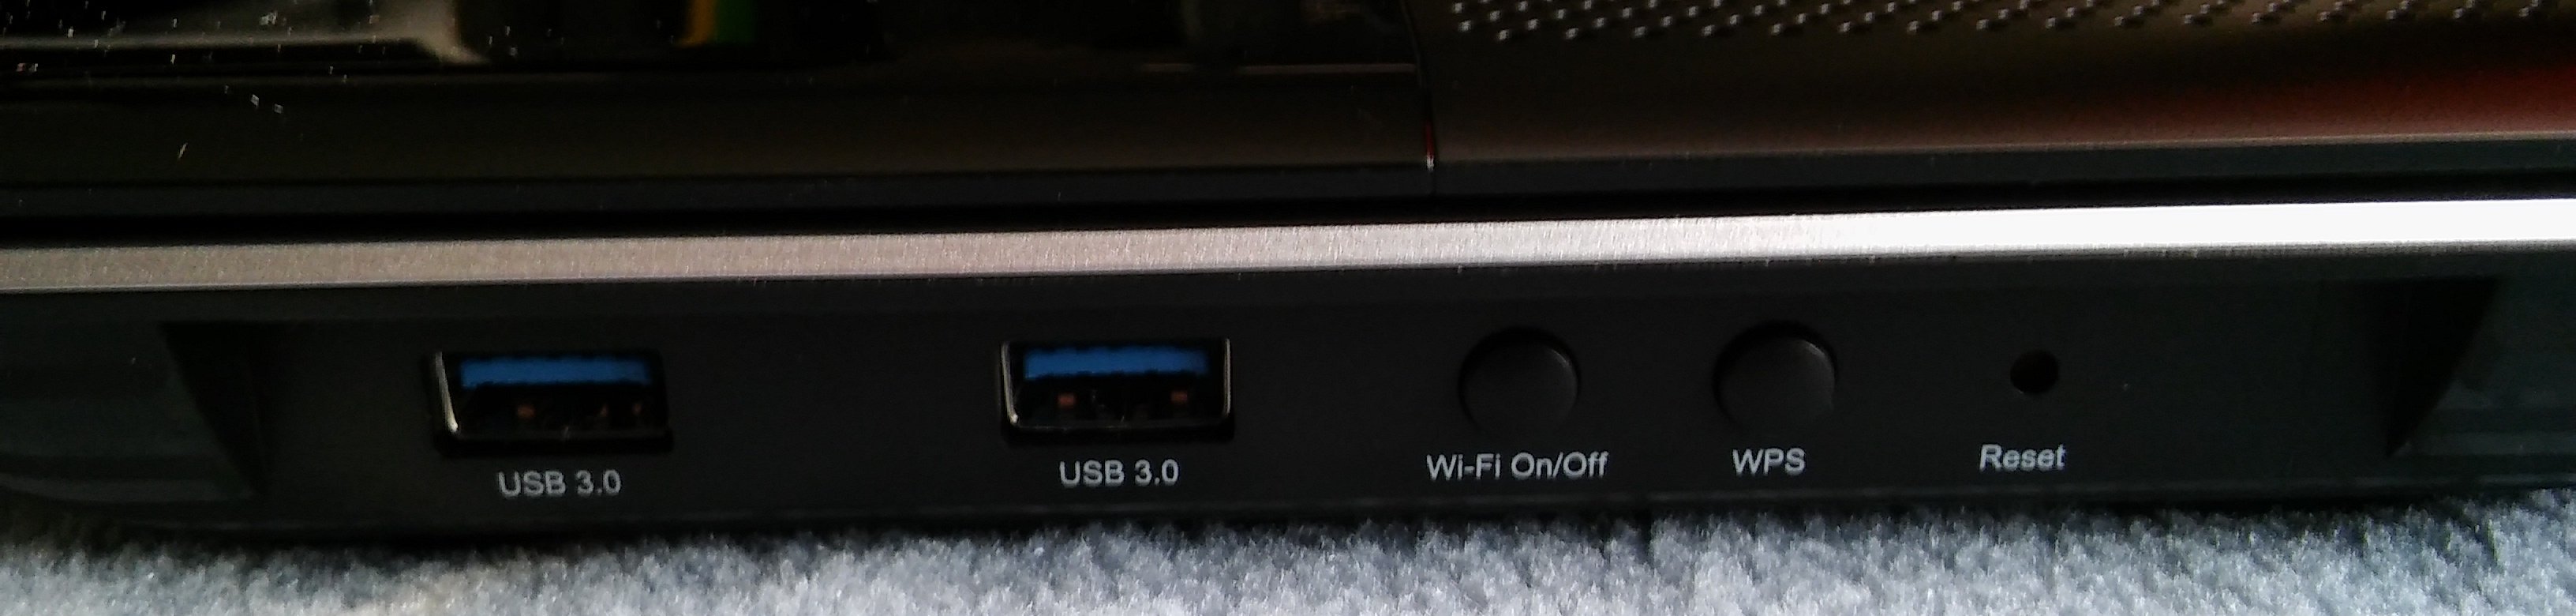 router-archer-c2600-porty-usb-przyciski